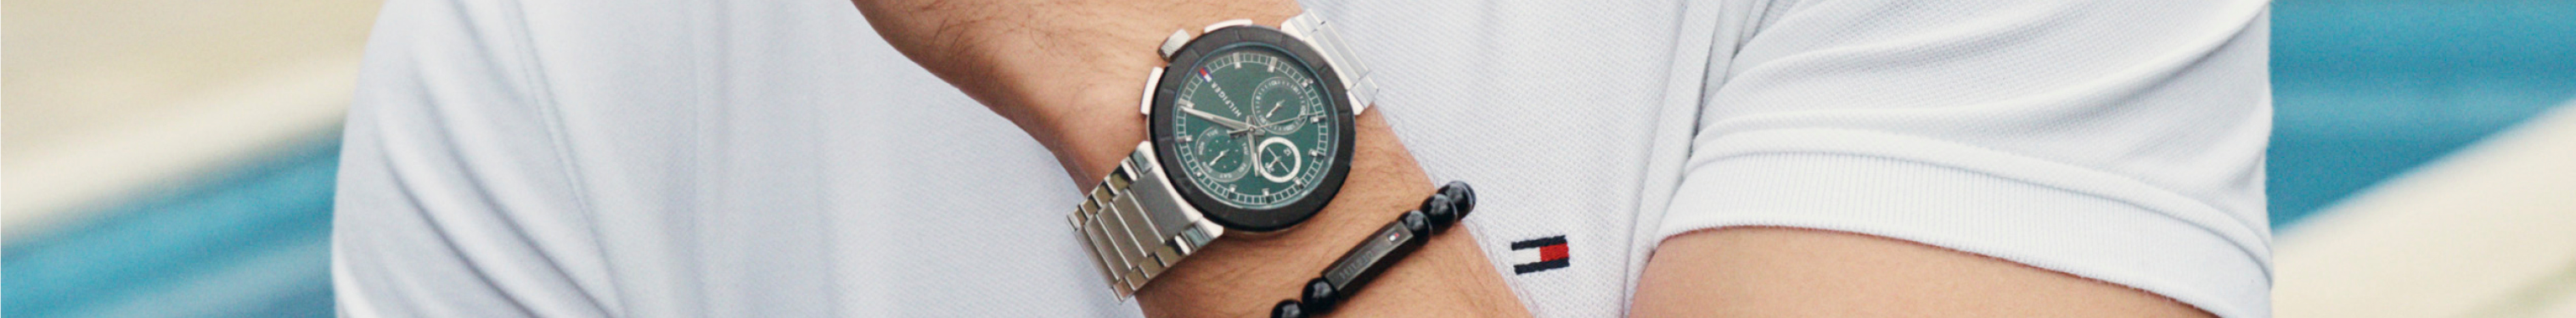 brand-tommy-hilfiger-watches-1.jpg